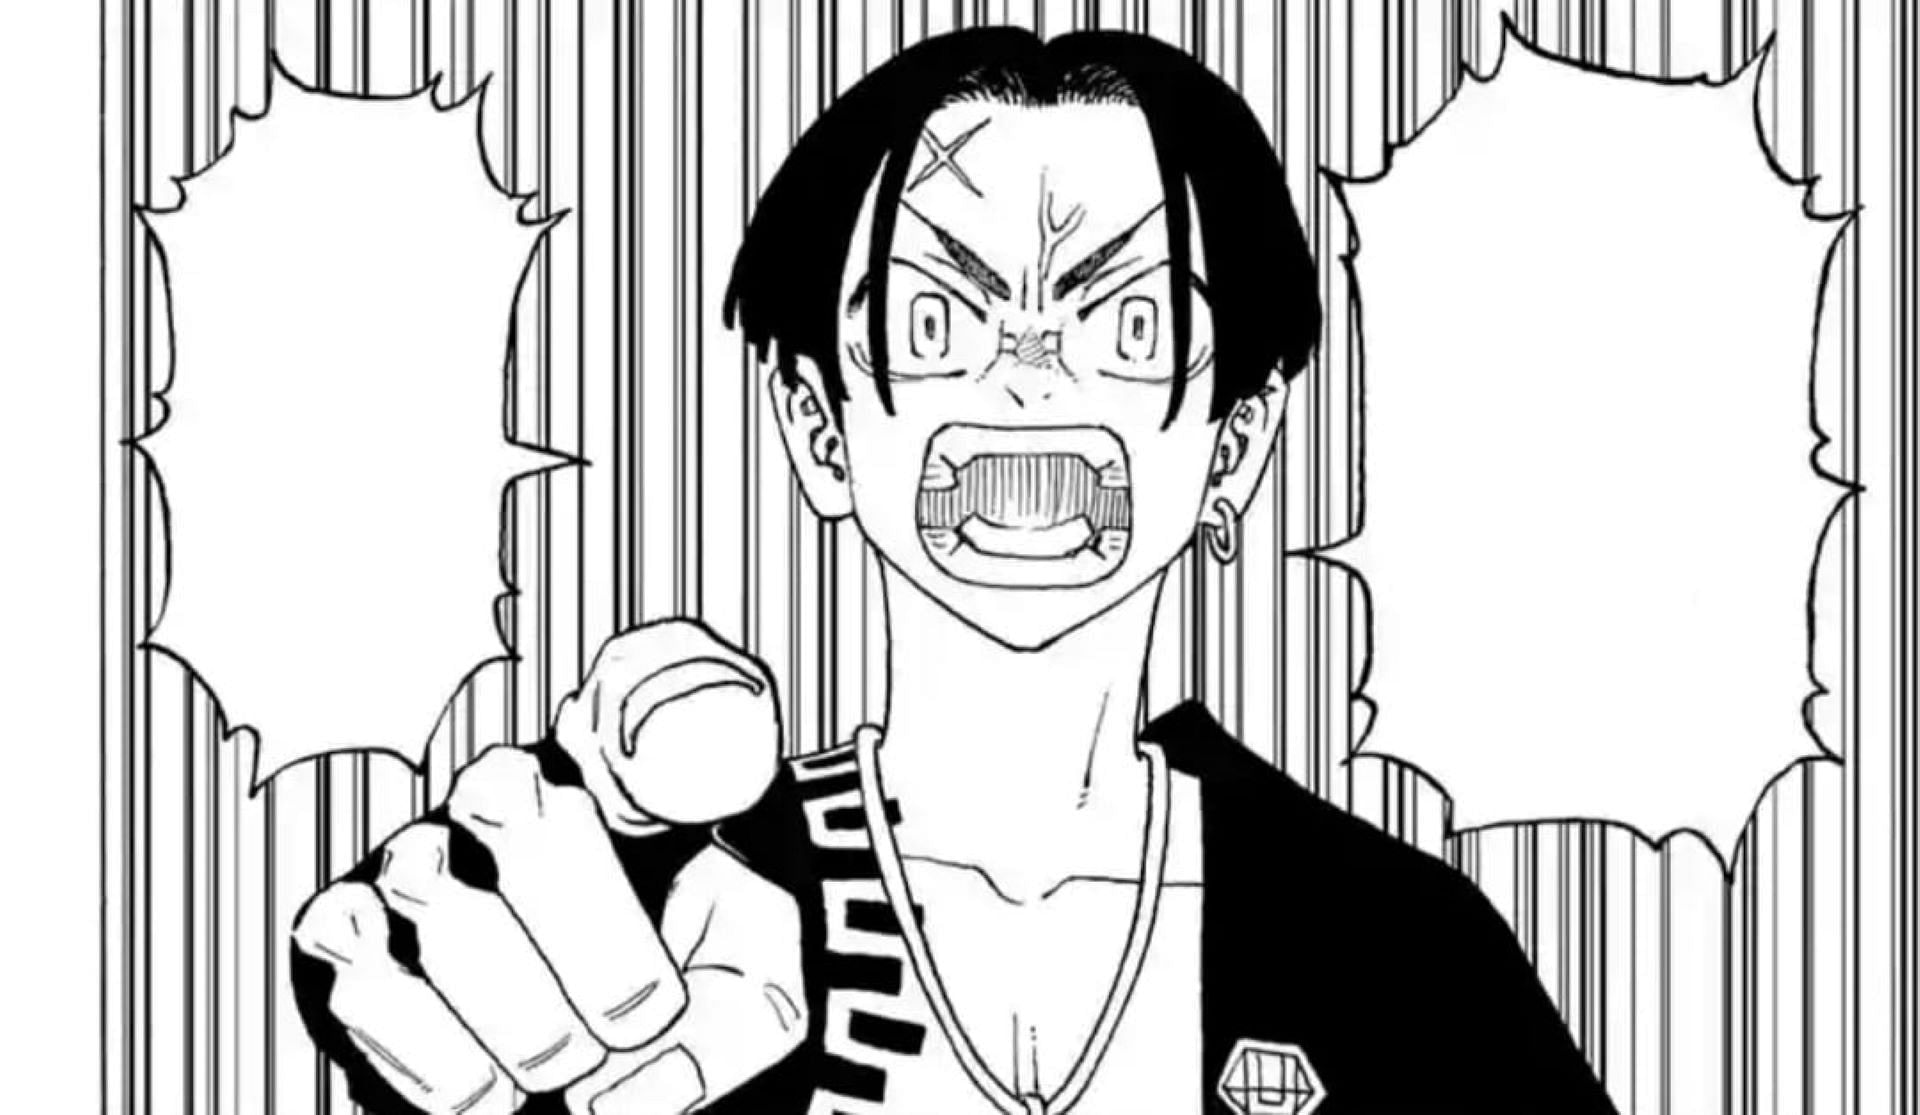 Hibaru, as seen in the manga (Image via Ken Wakui/Shueisha)